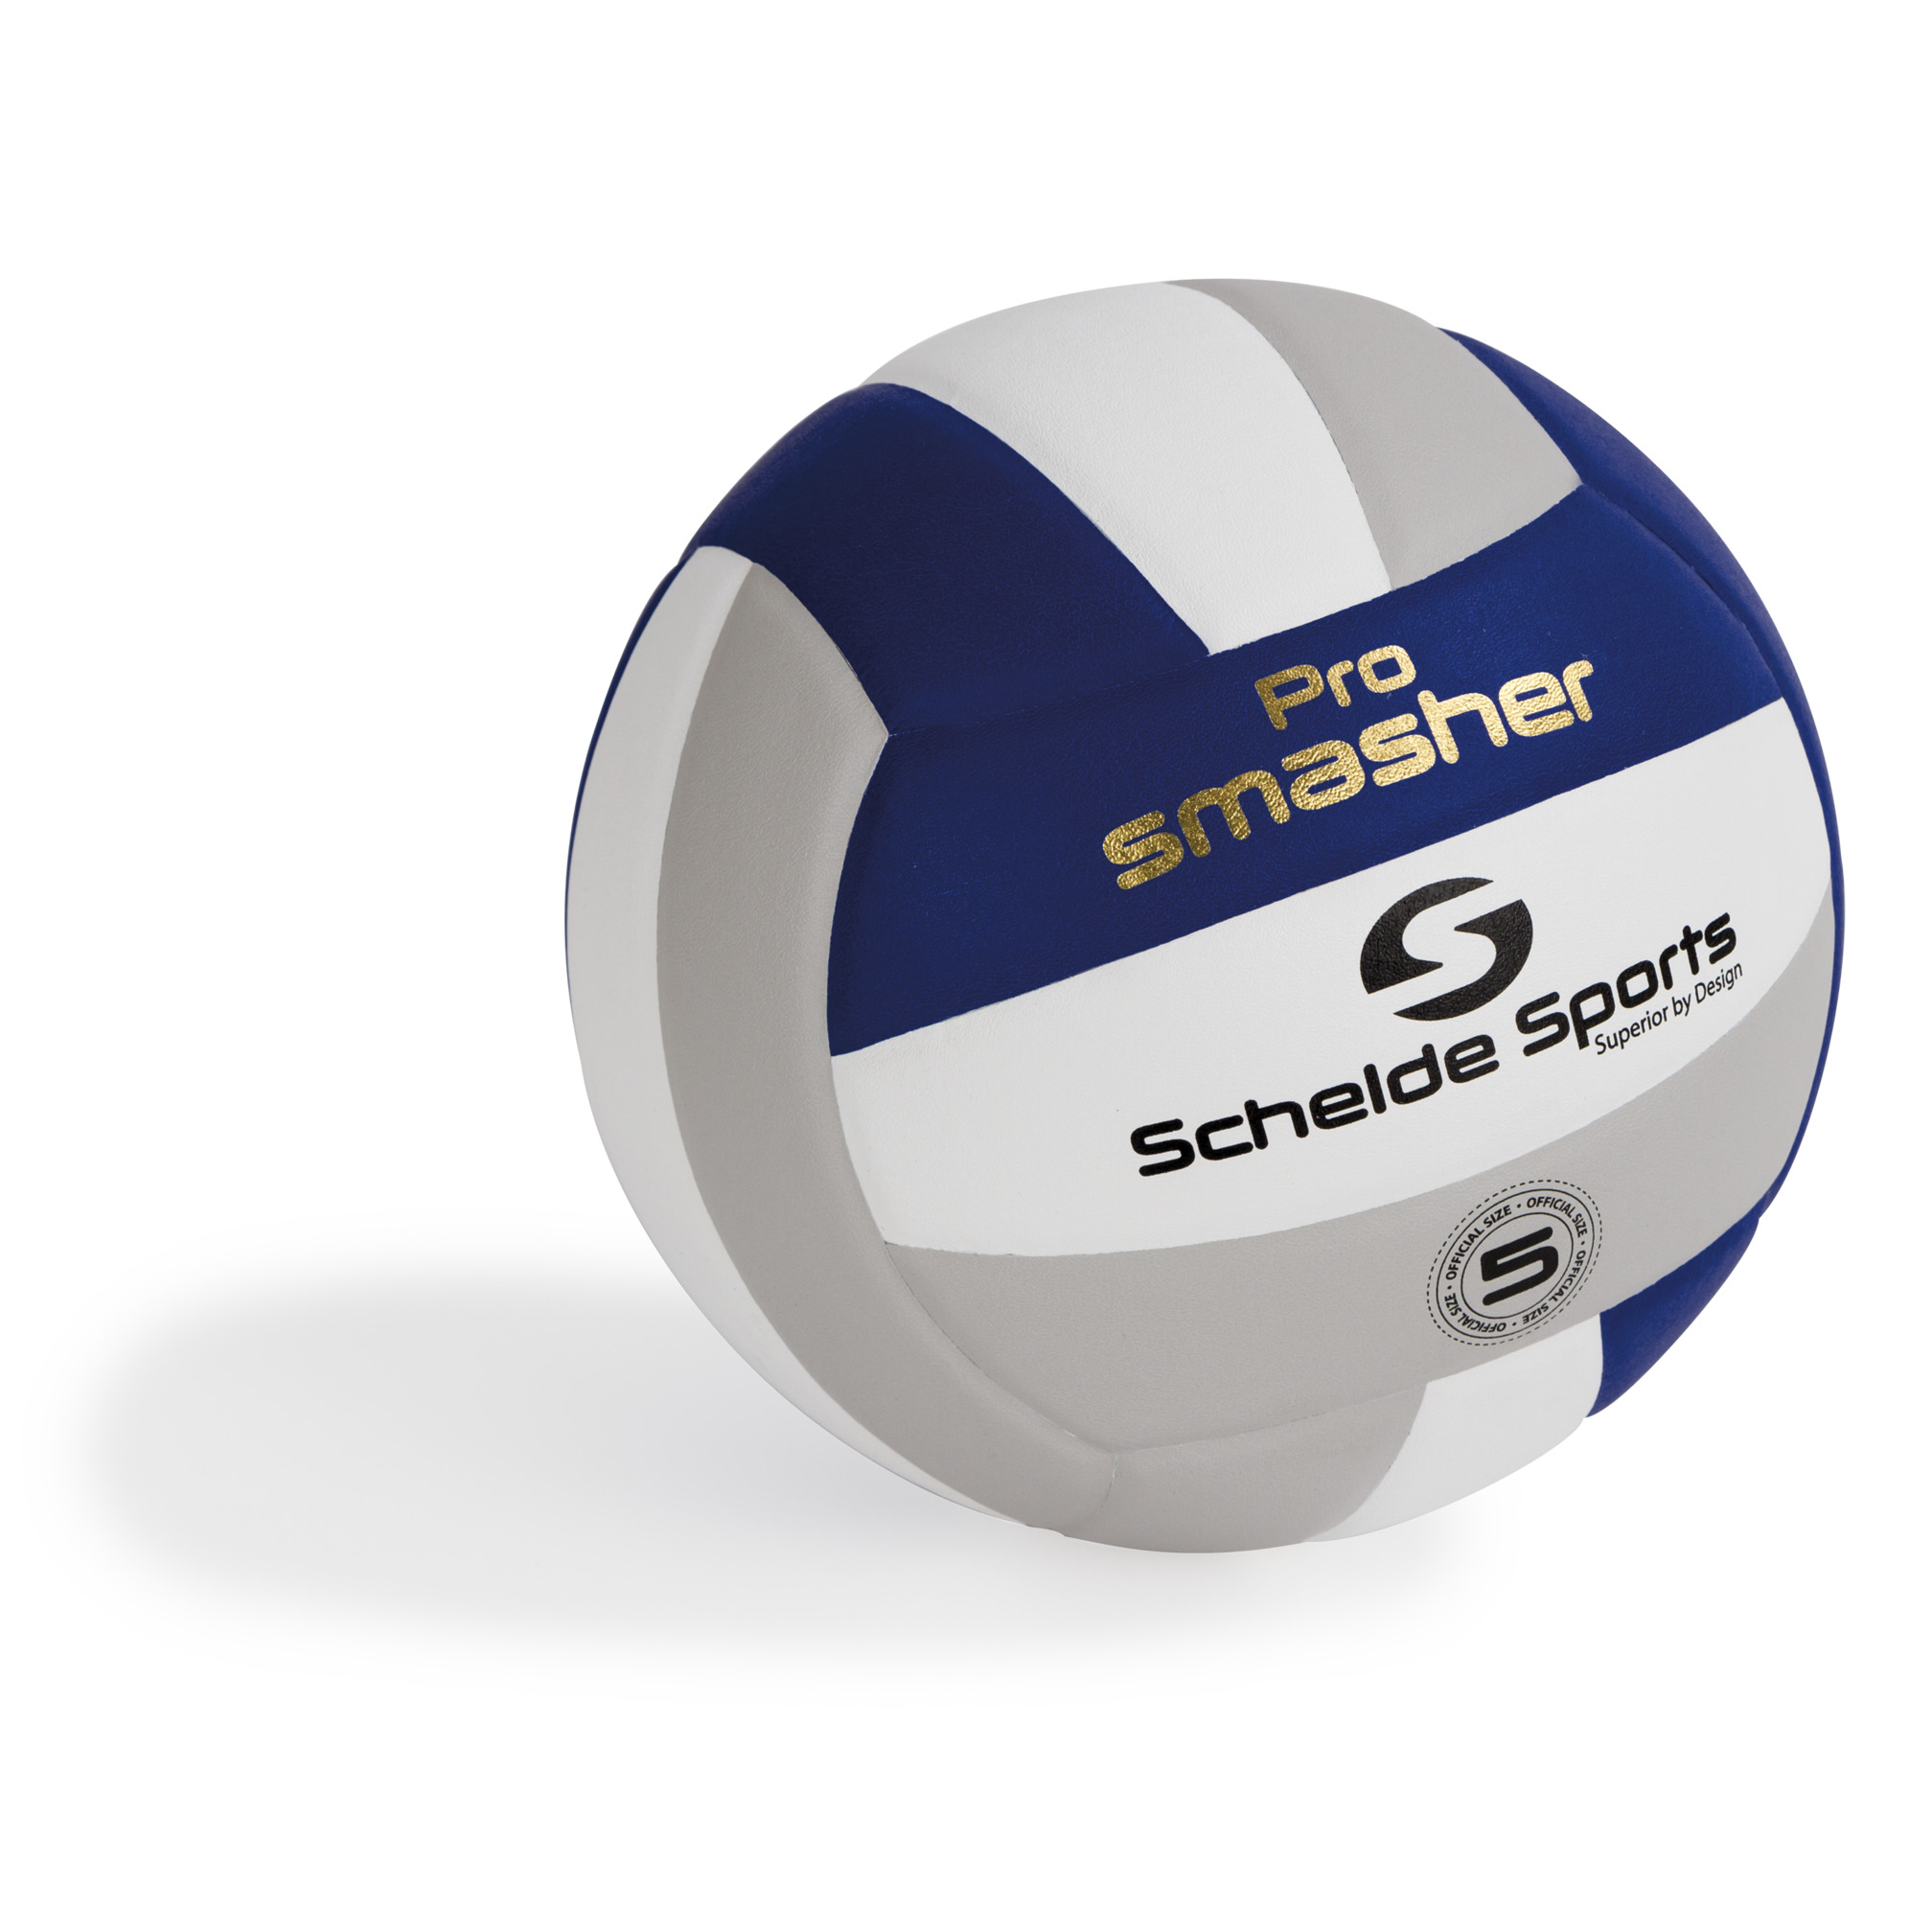 Schelde Sports Volleyball Pro Smasher, Größe 5